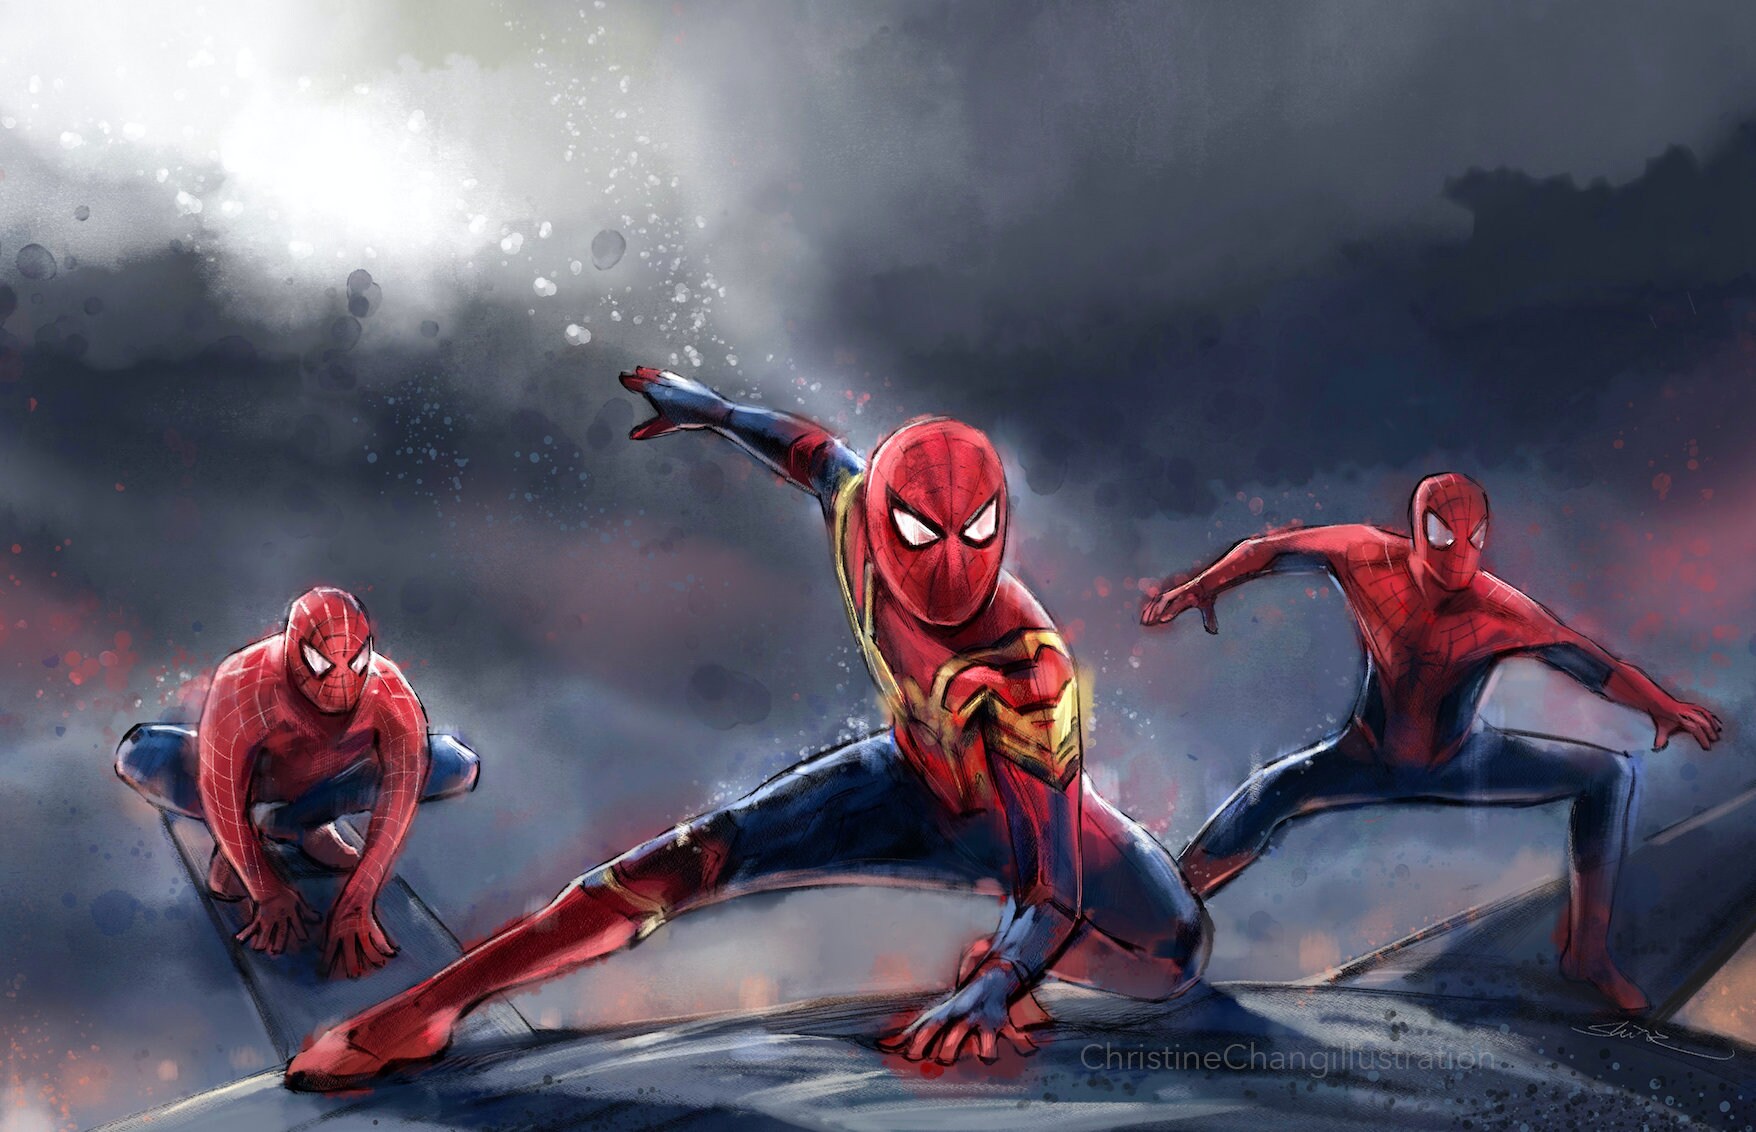 Poster Spiderman No Way Home 2021 sur toile - Décoration murale